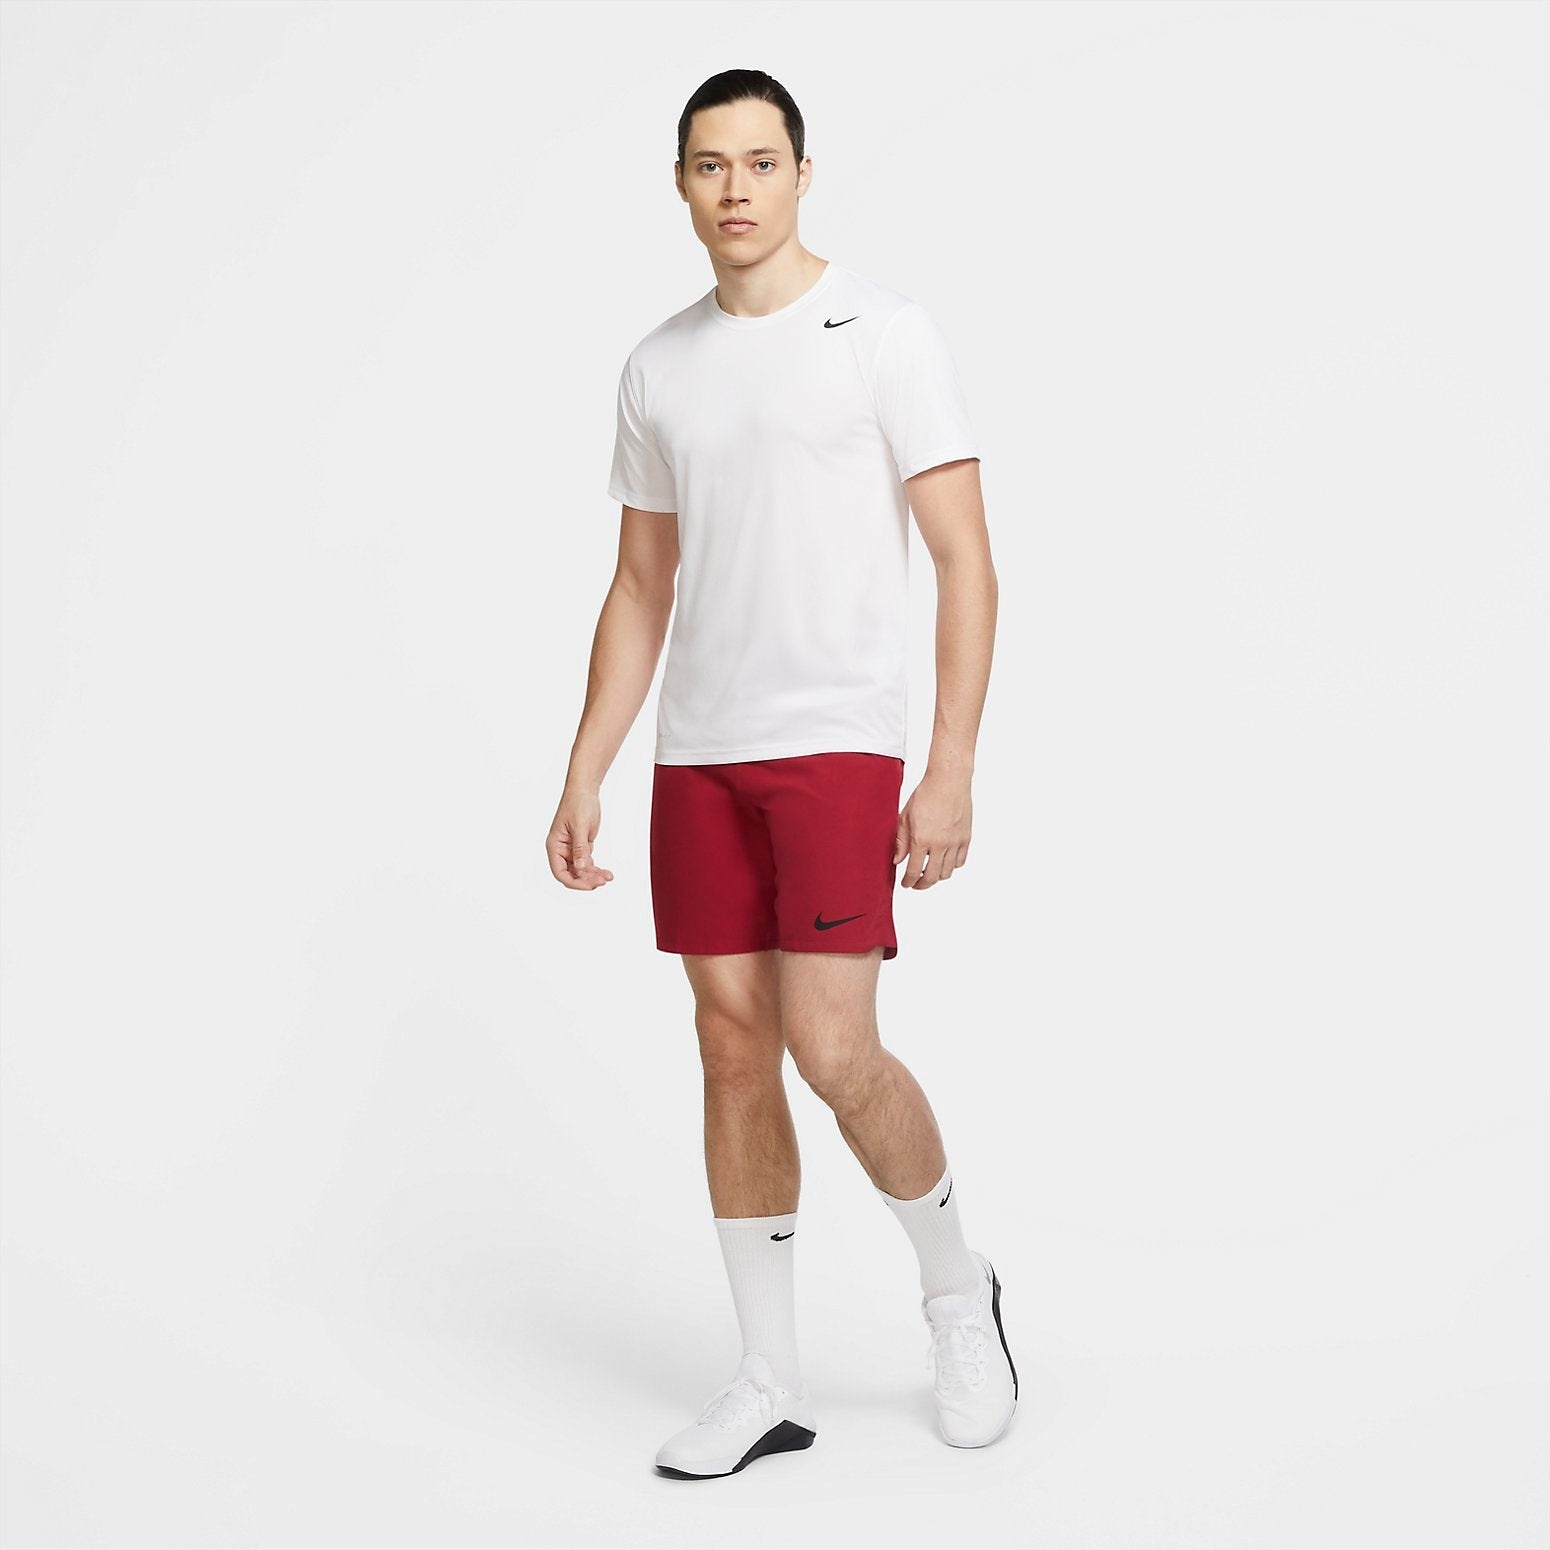 Nike Dri-FIT Legend Training T-shirt 'White' 718834-100 - 4